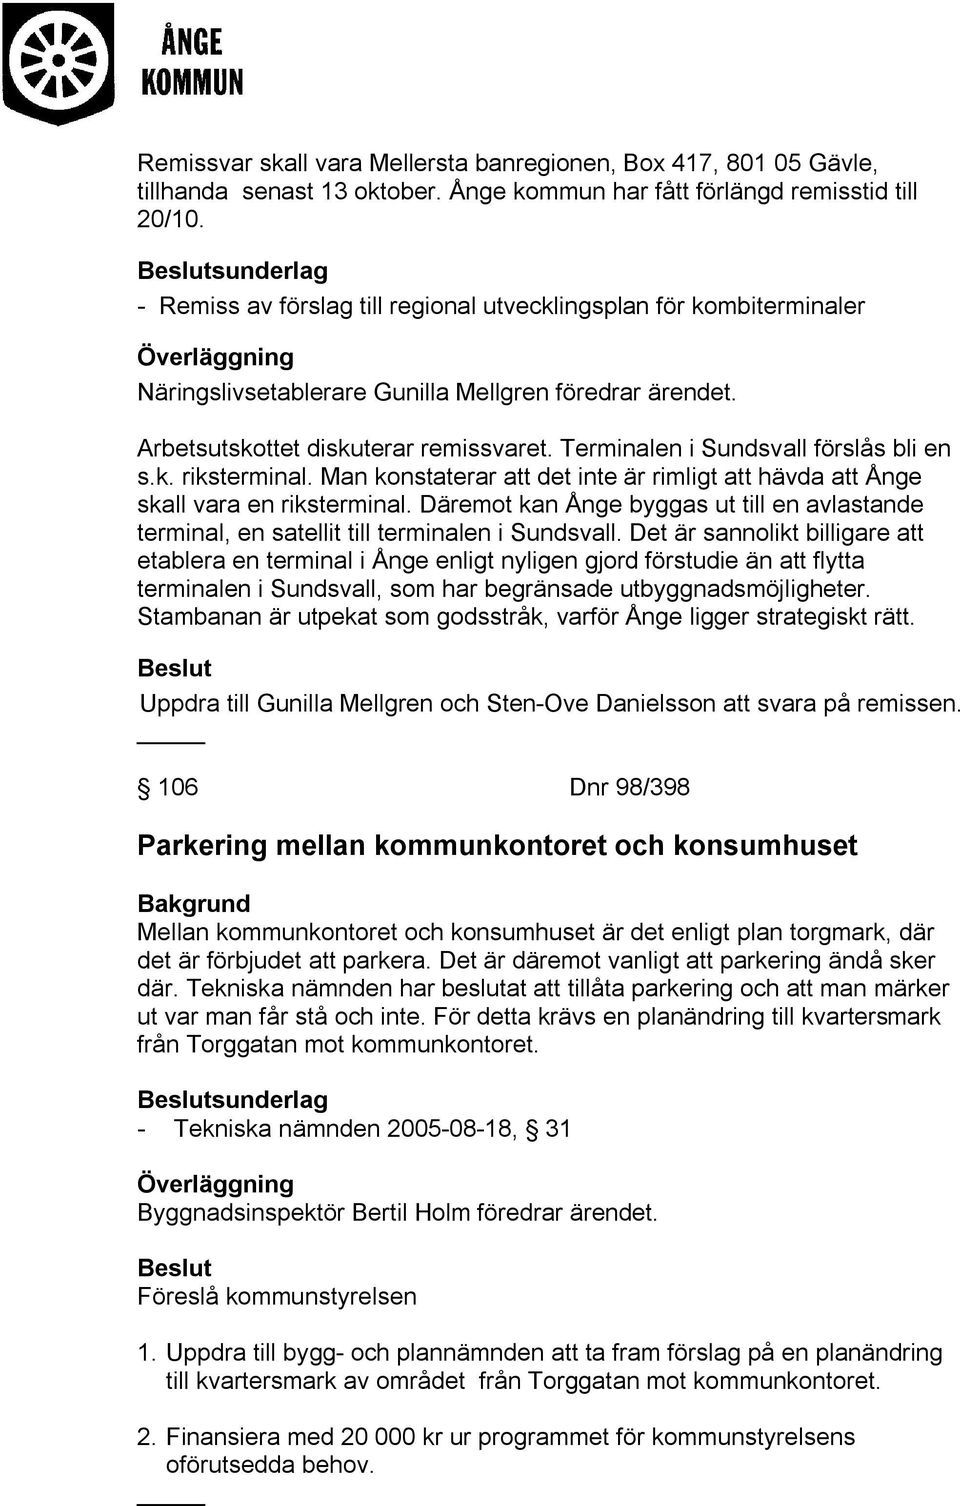 Terminalen i Sundsvall förslås bli en s.k. riksterminal. Man konstaterar att det inte är rimligt att hävda att Ånge skall vara en riksterminal.